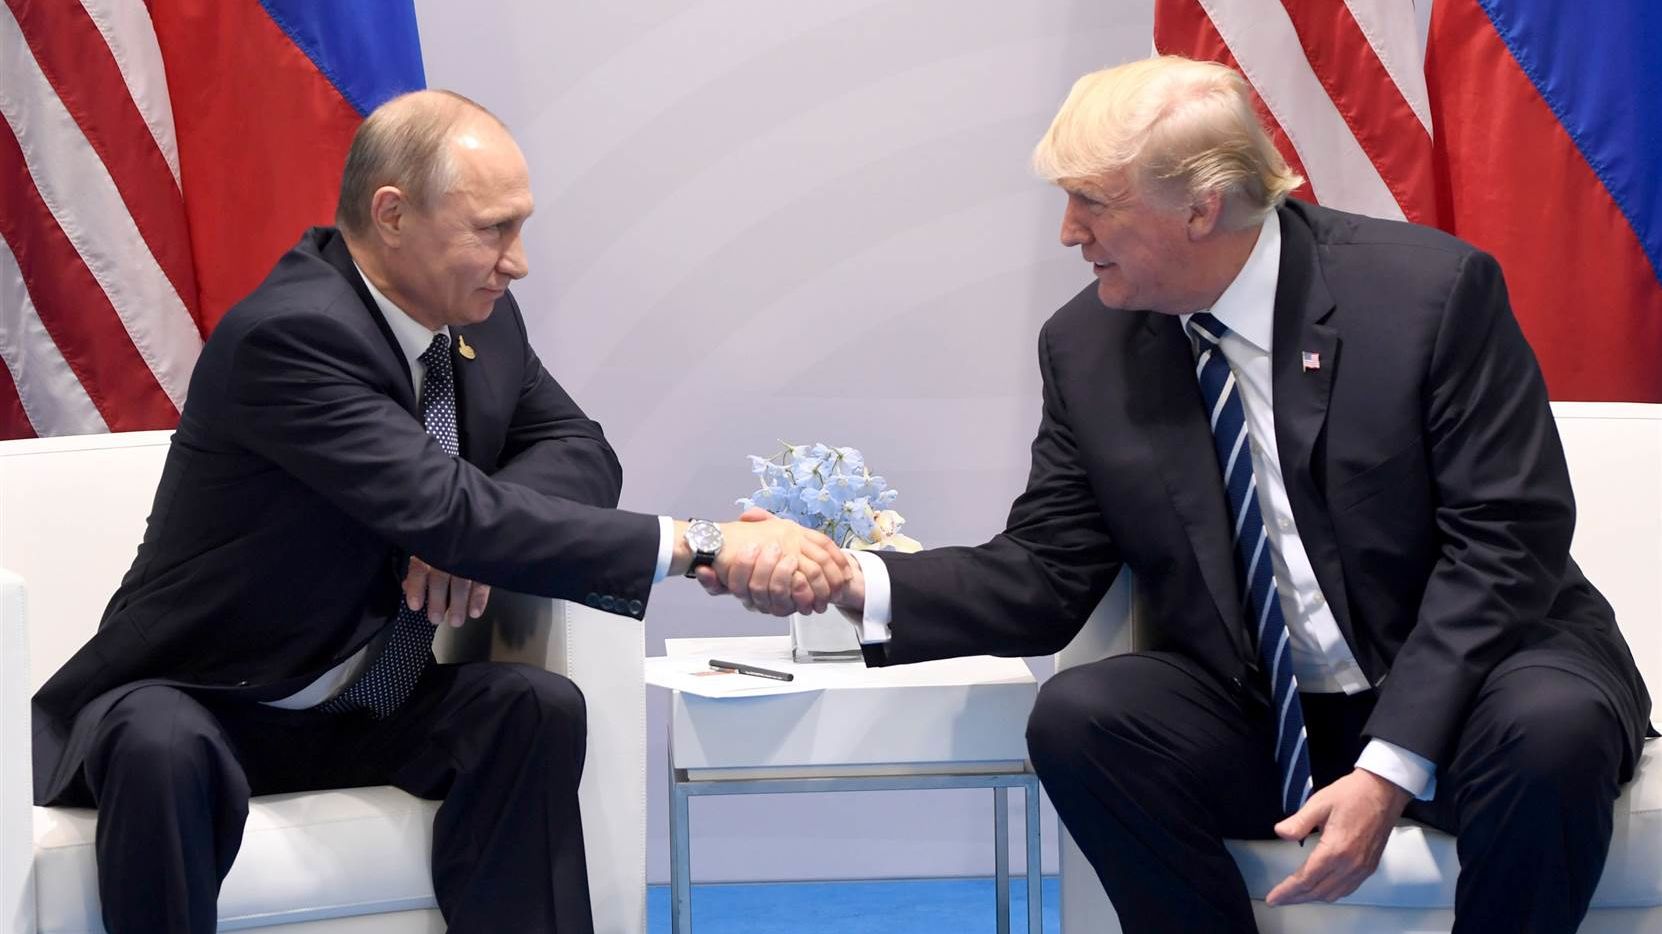 Кушнарь о встрече Путина и Трампа: "Кремлевский маньяк ощущал себя кроликом рядом с американским удавом"